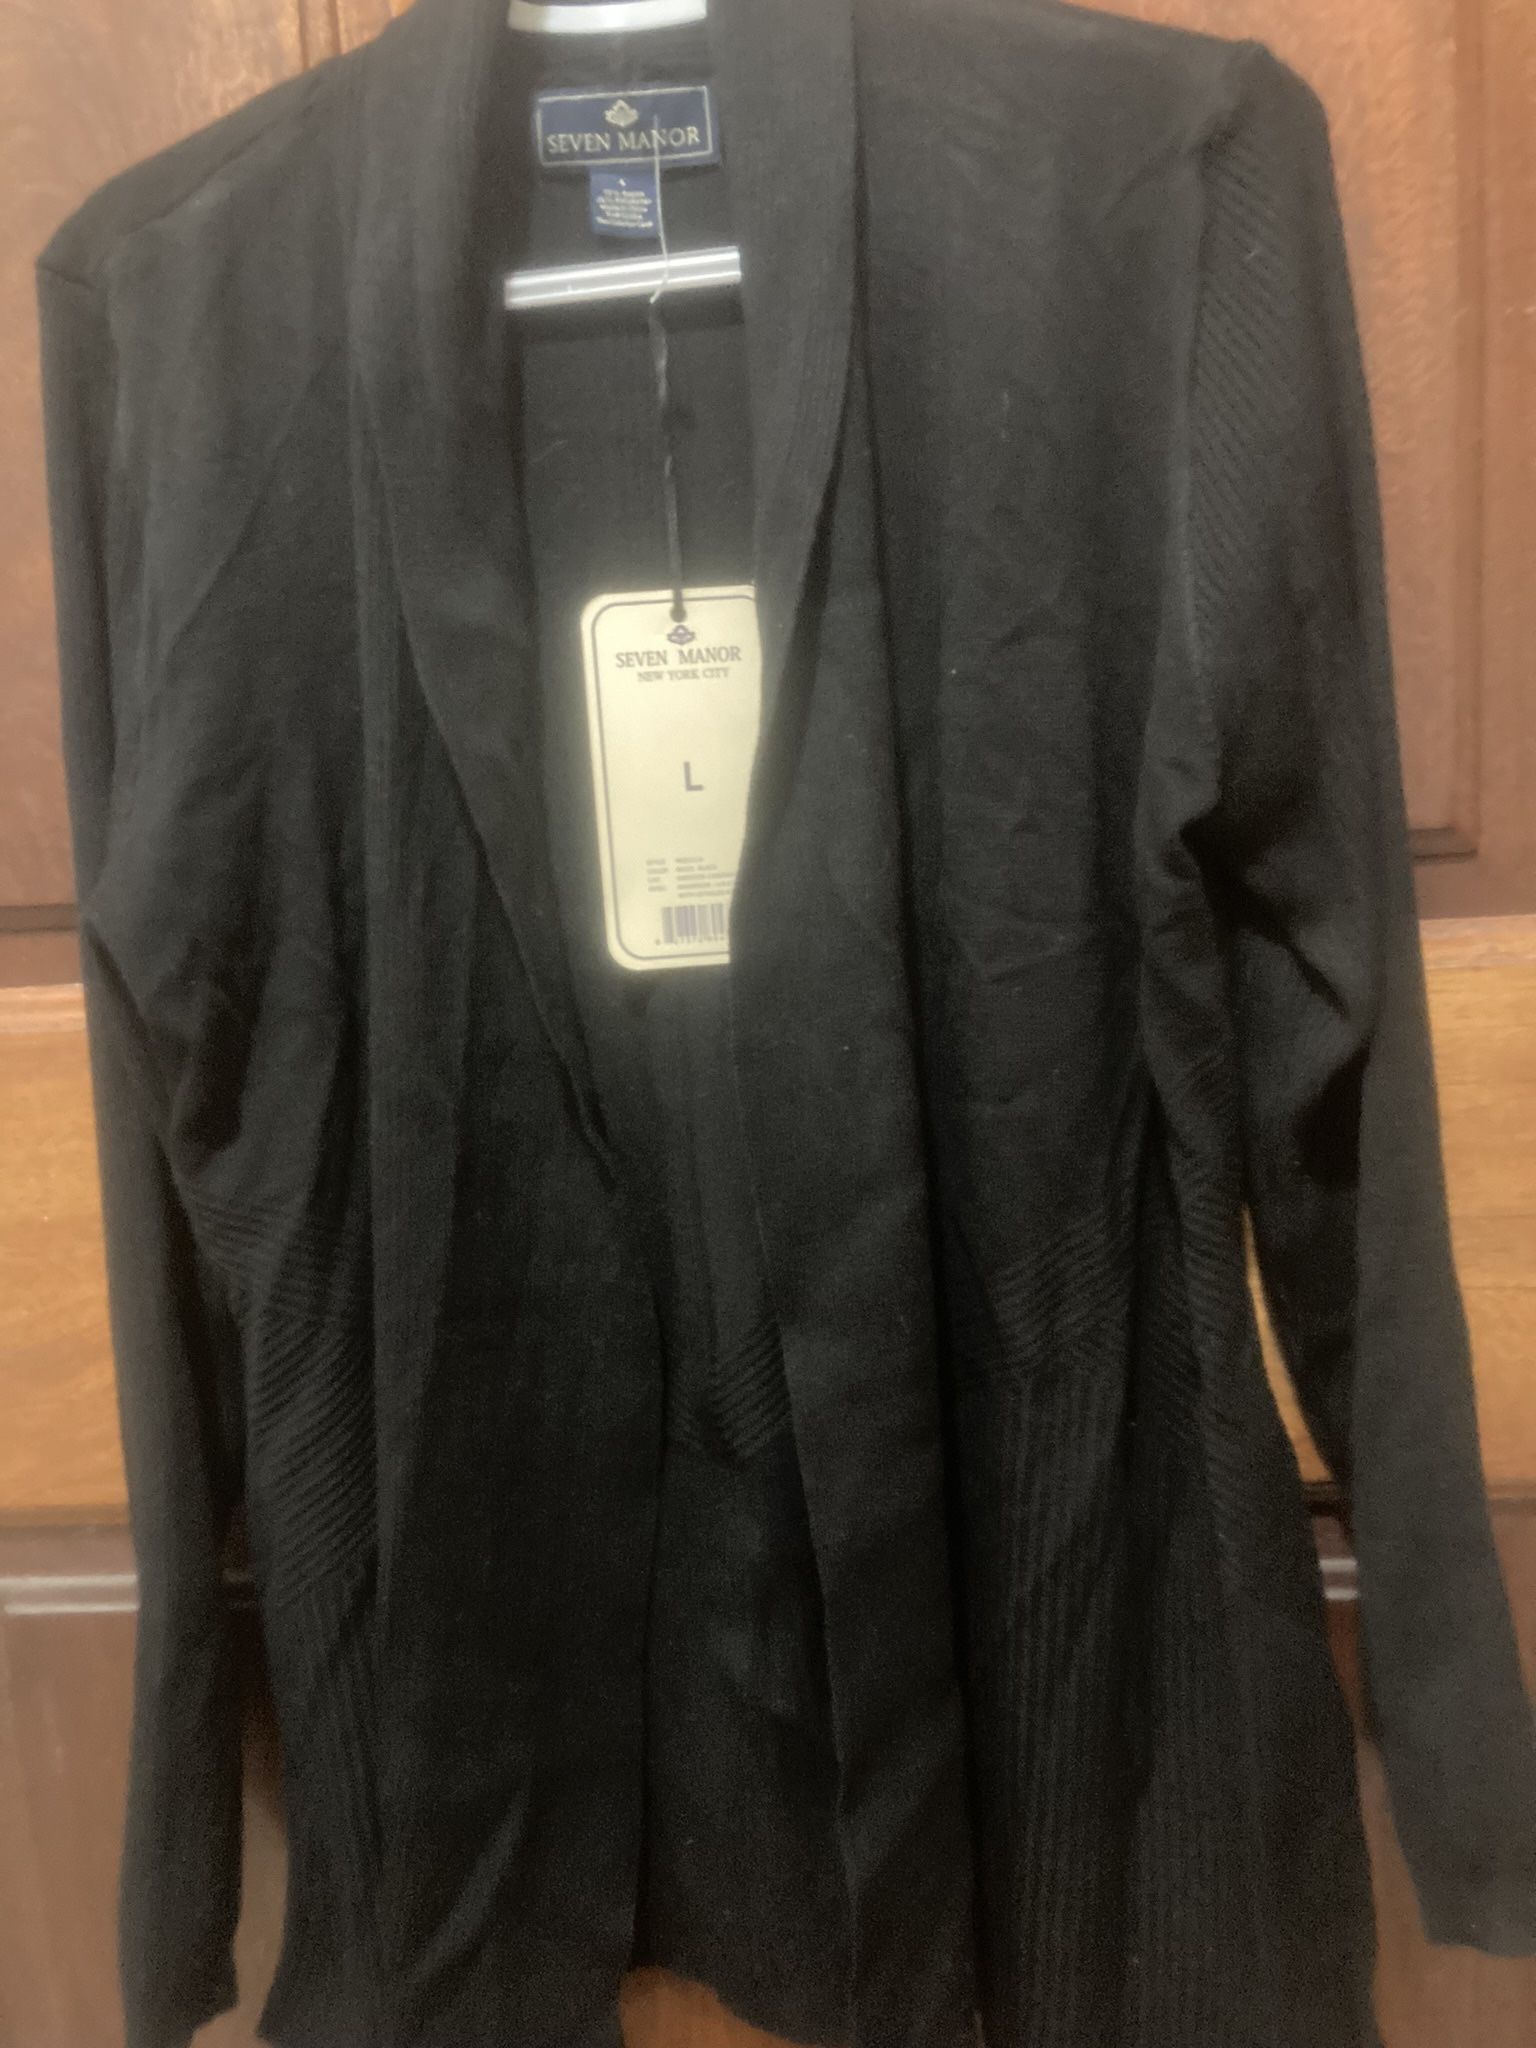 $10 New Sz L Cardigan Black Sweater 